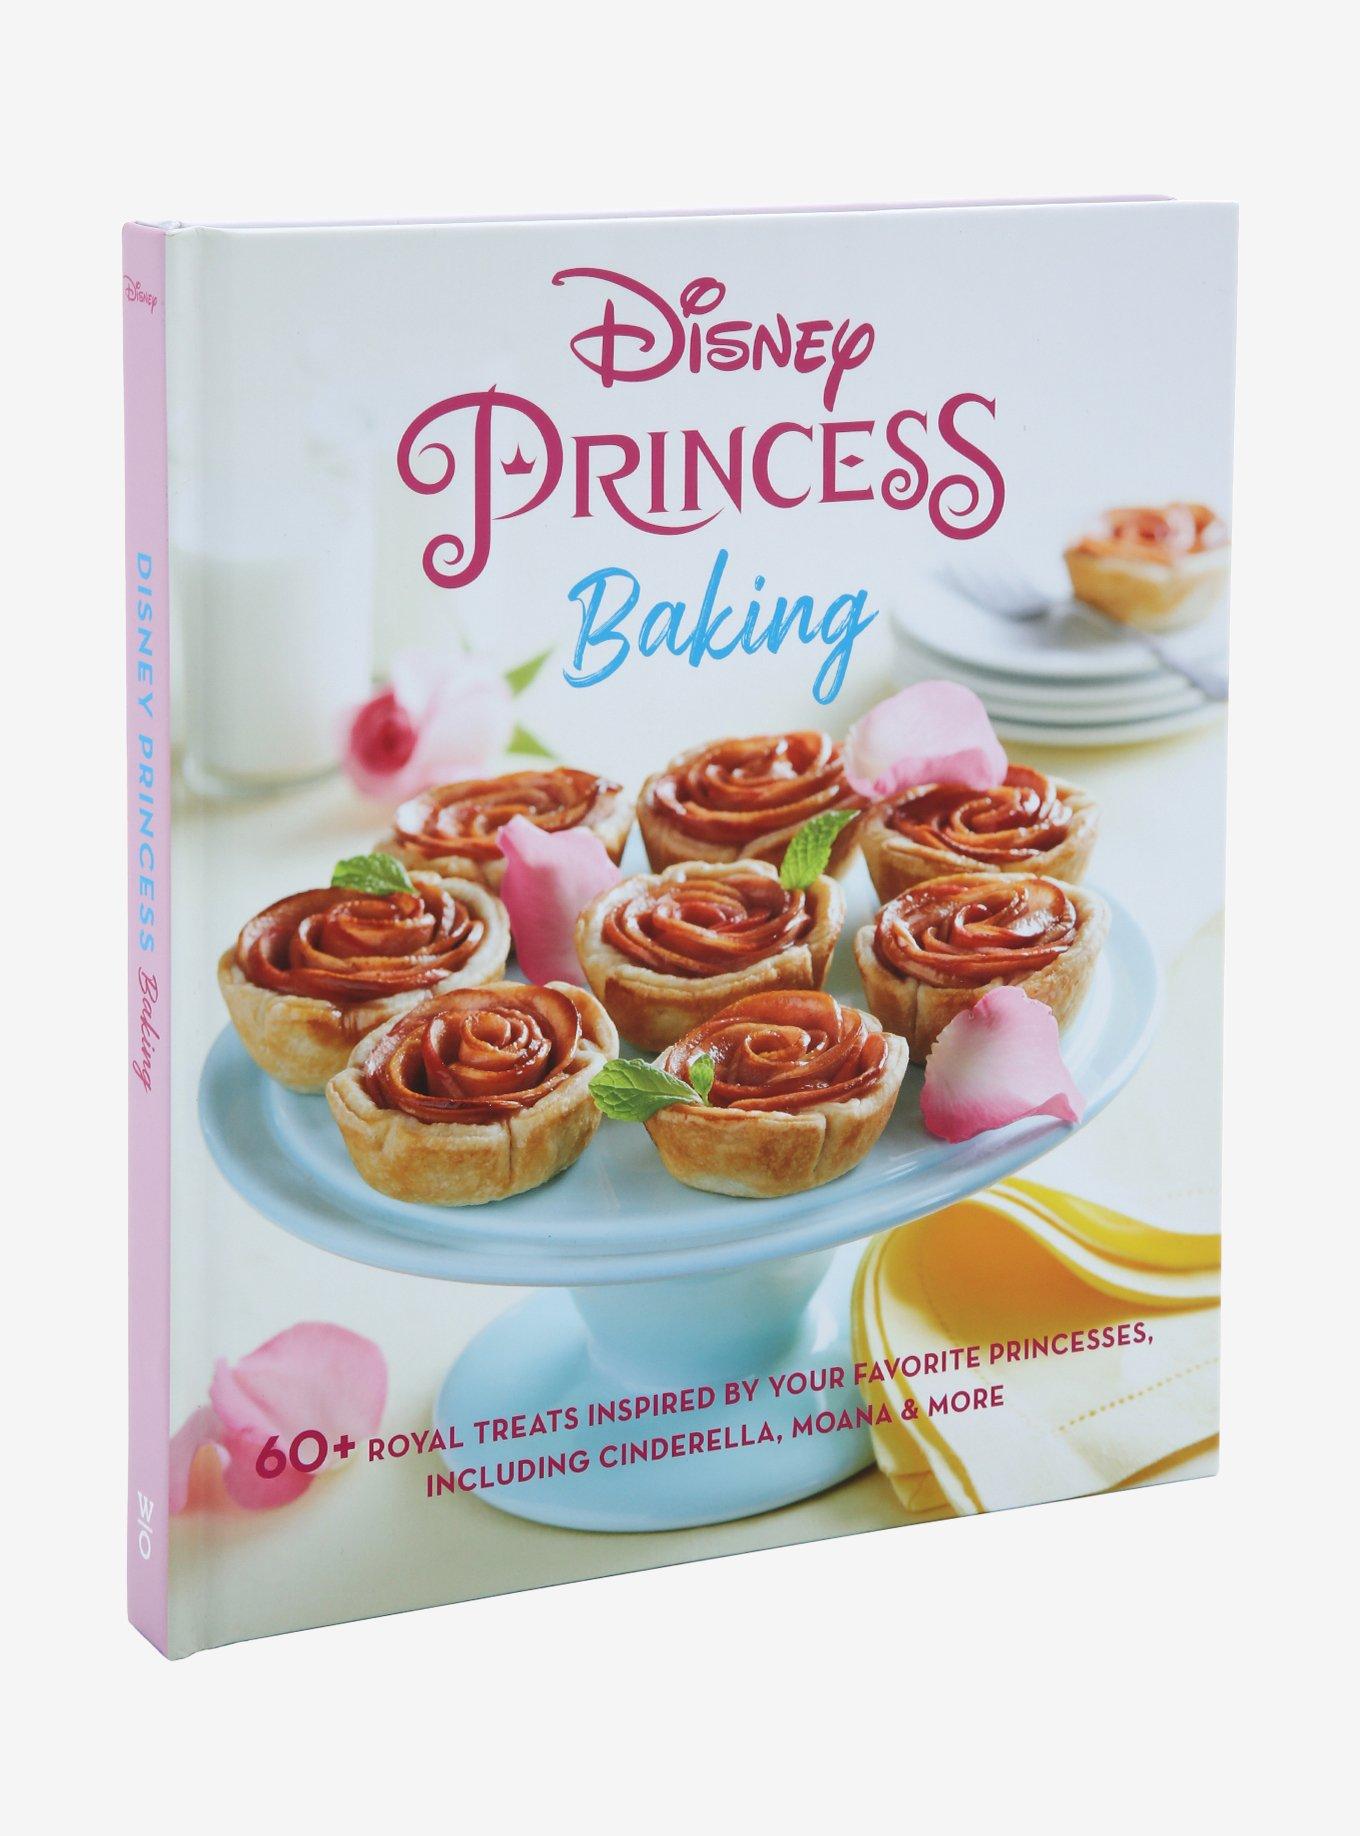 Disney Inspired Moana Bento Box Snacks - The Healthy Mouse